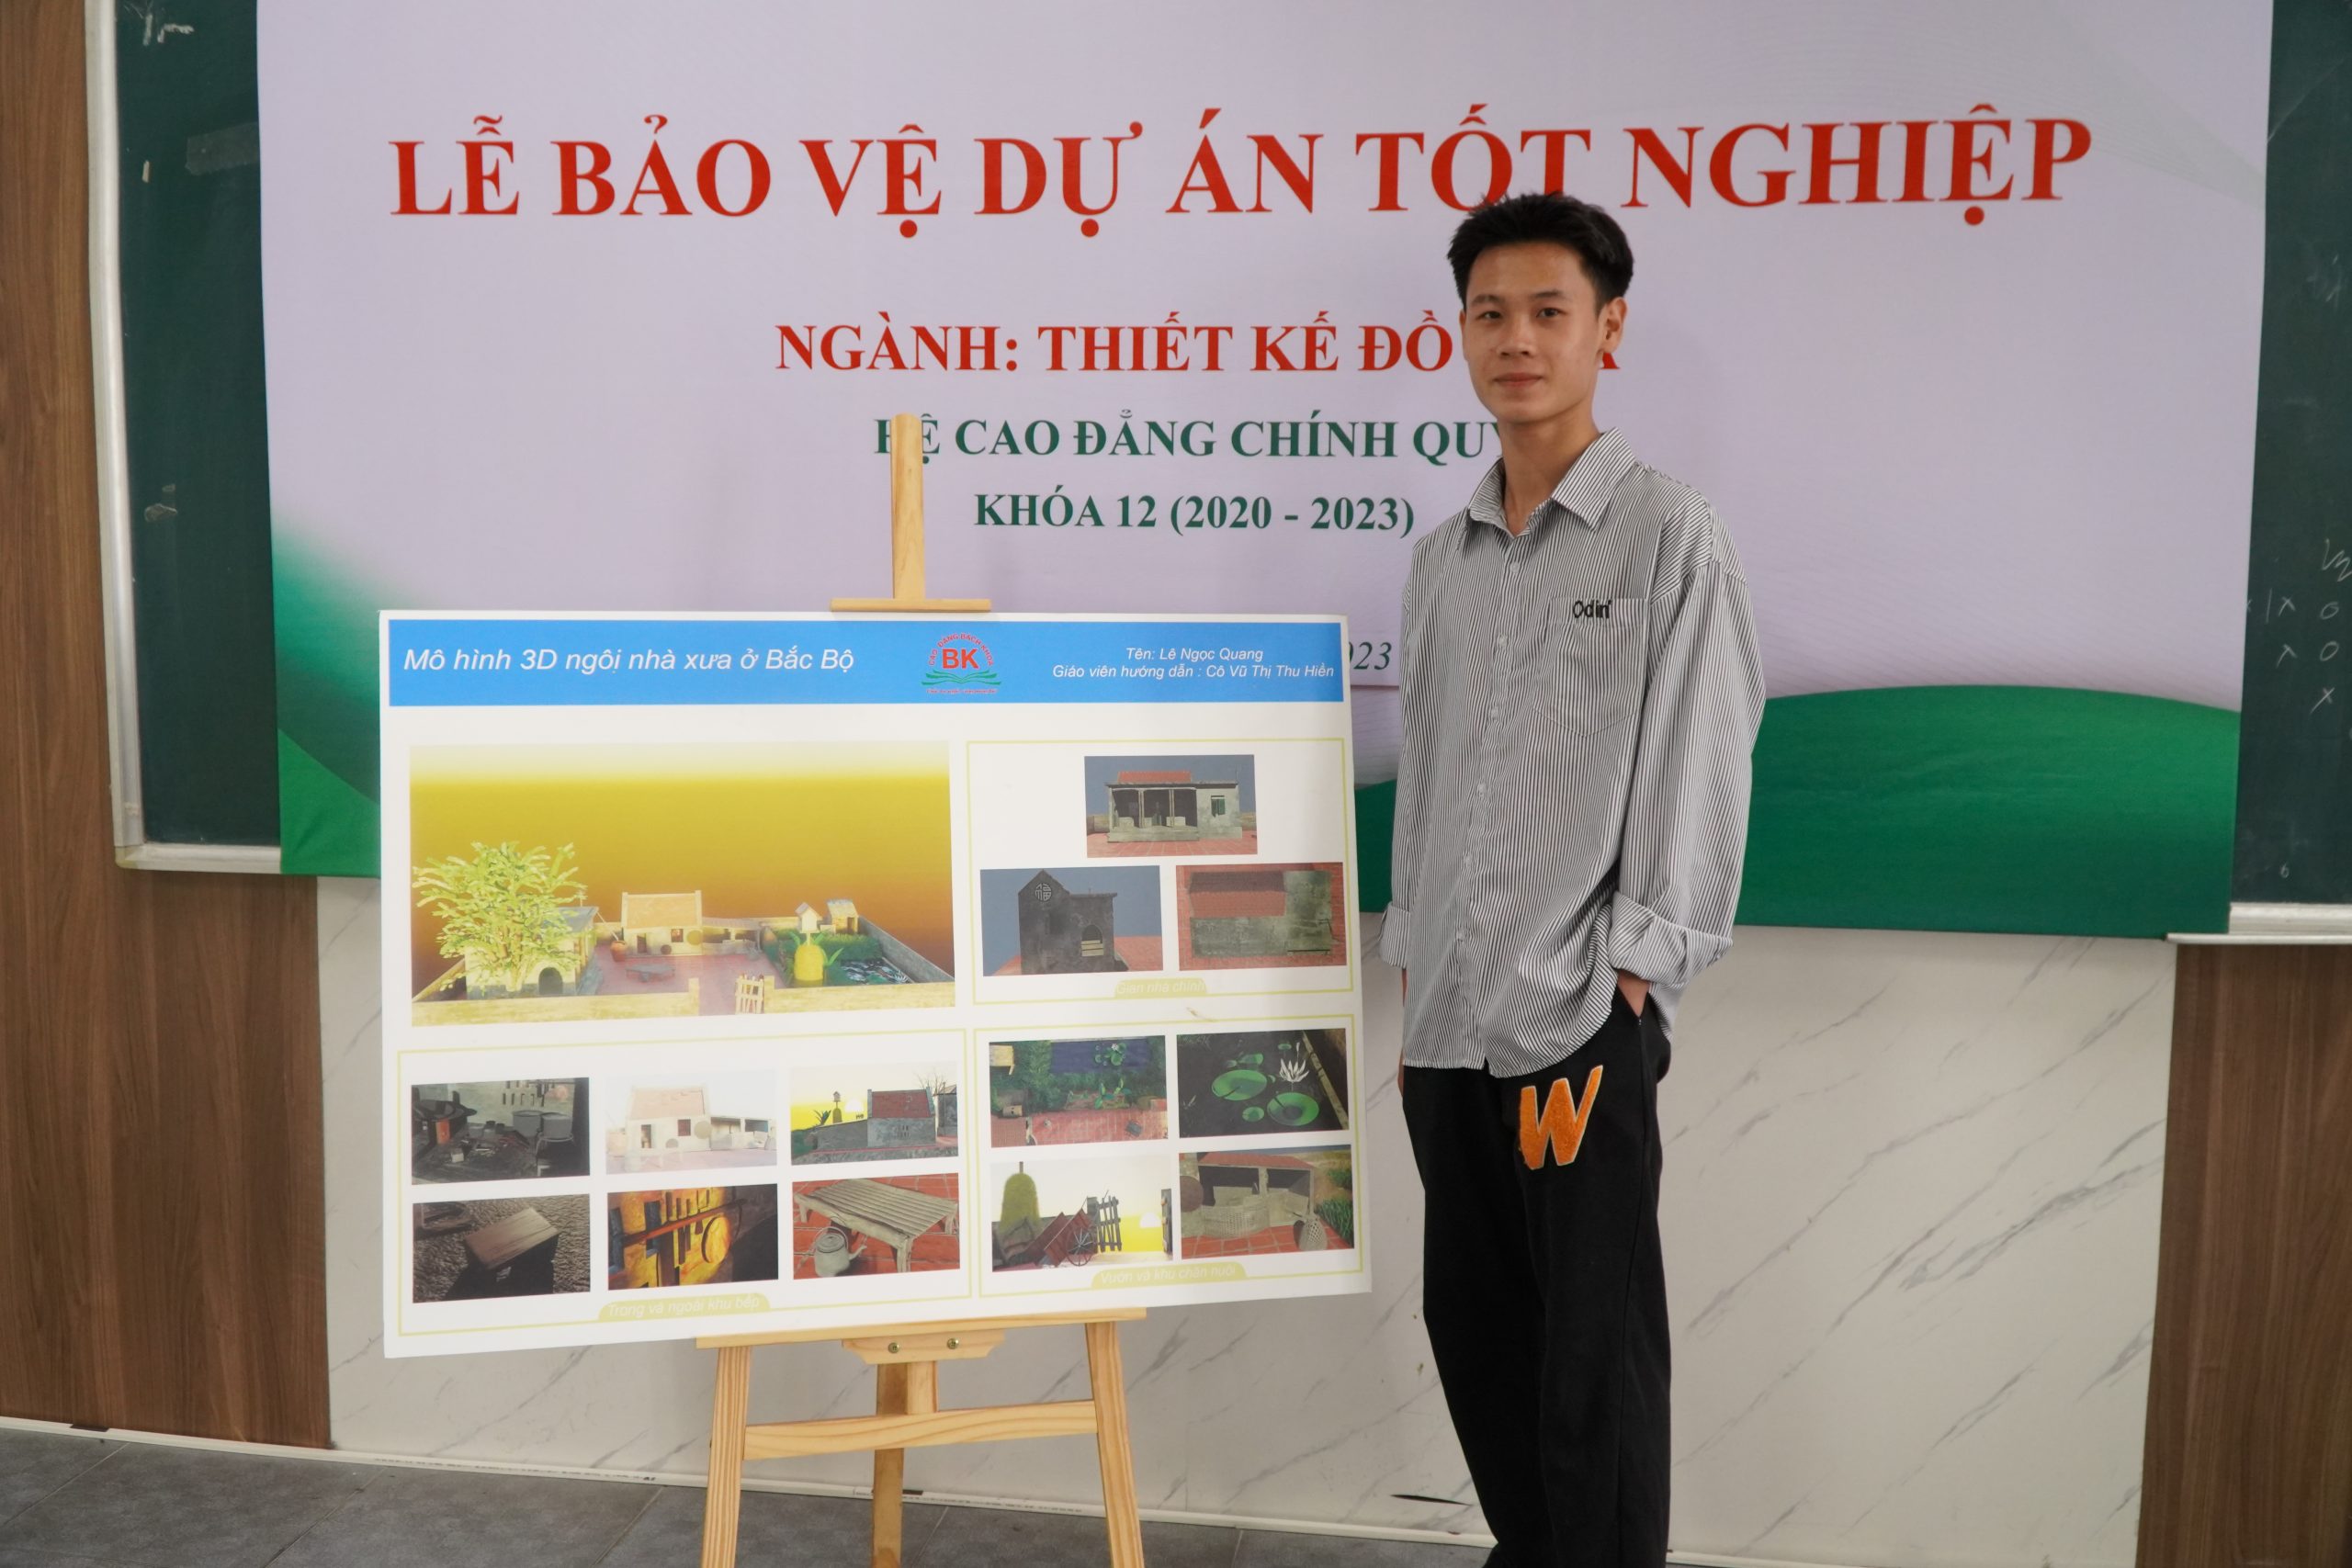 Sinh viên Lê Ngọc Quang với đề tài Xây dựng mô hình 3D căn nhà thời bao cấp